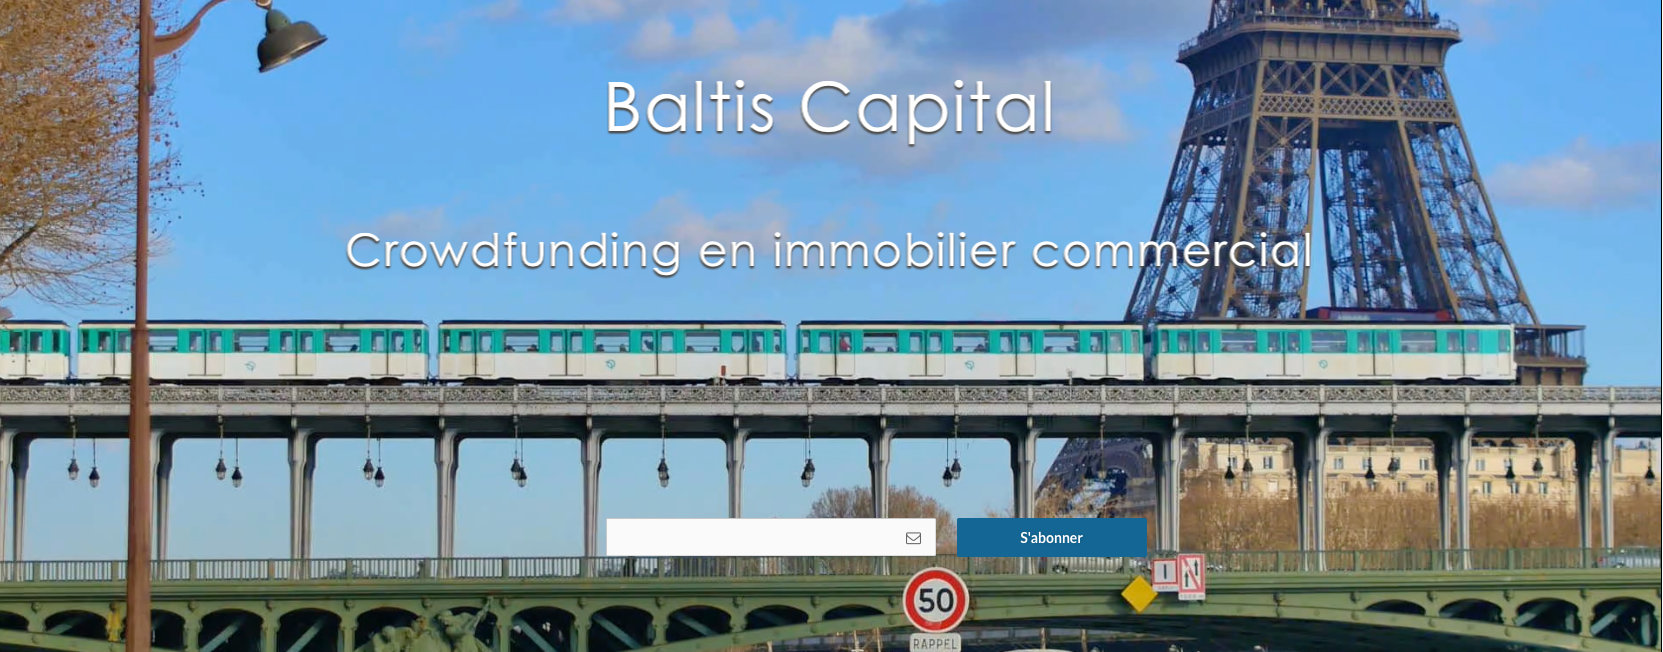 Baltis Capital : 1ère plateforme de crowdfunding en immobilier commercial